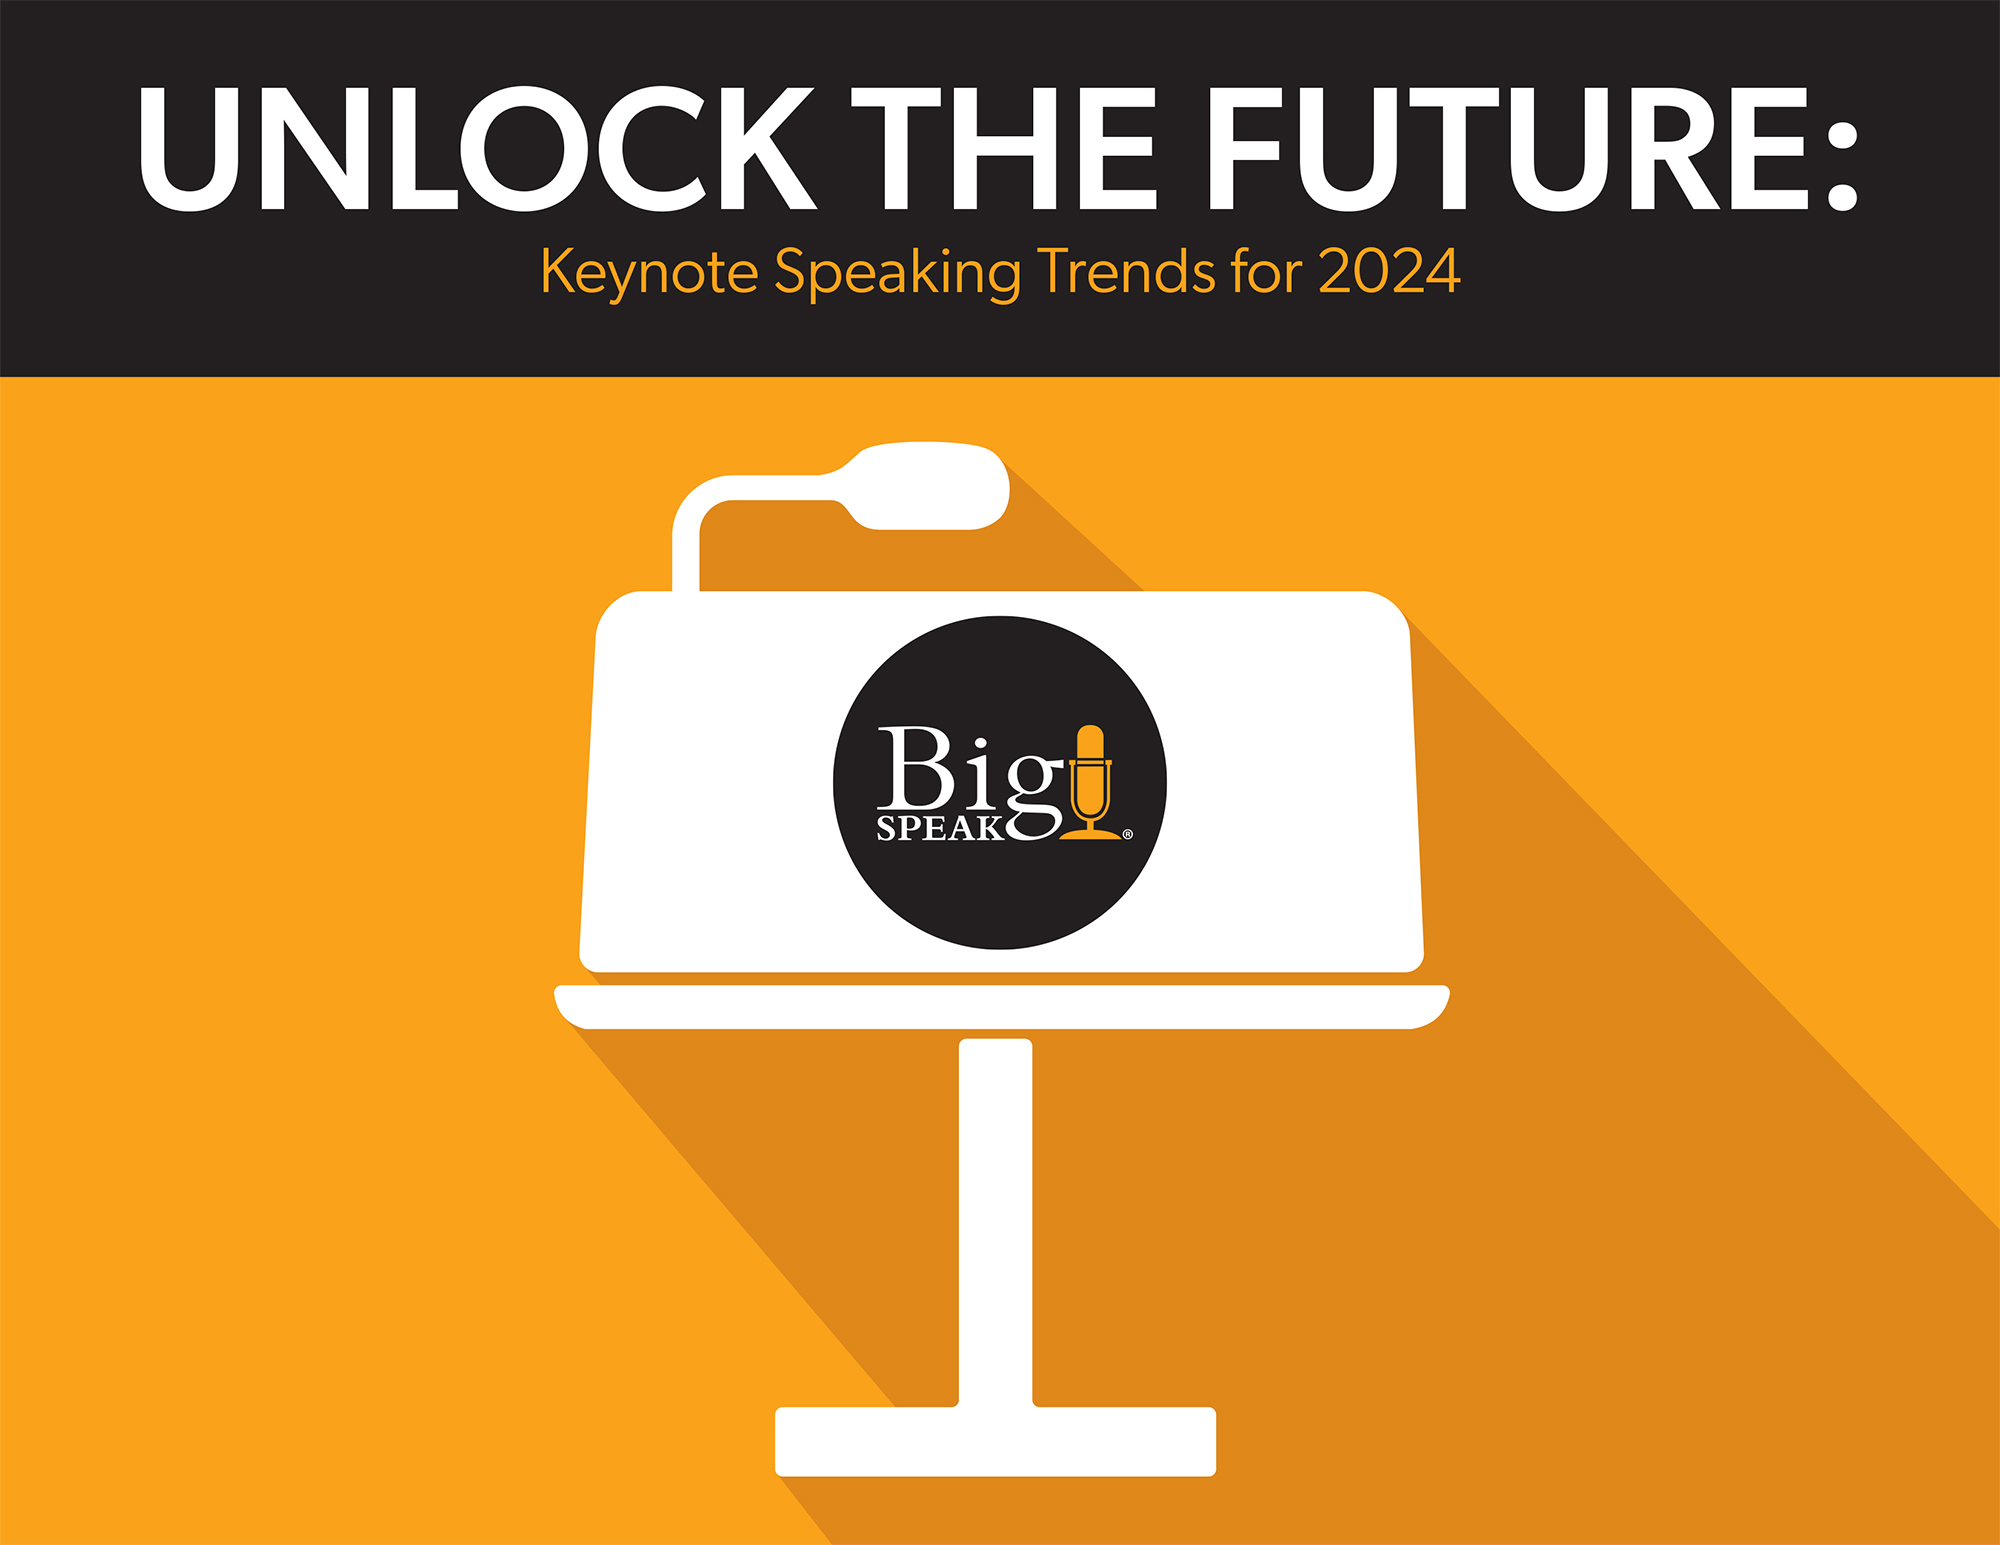 Keynote Speaking Industry Trends in 2024